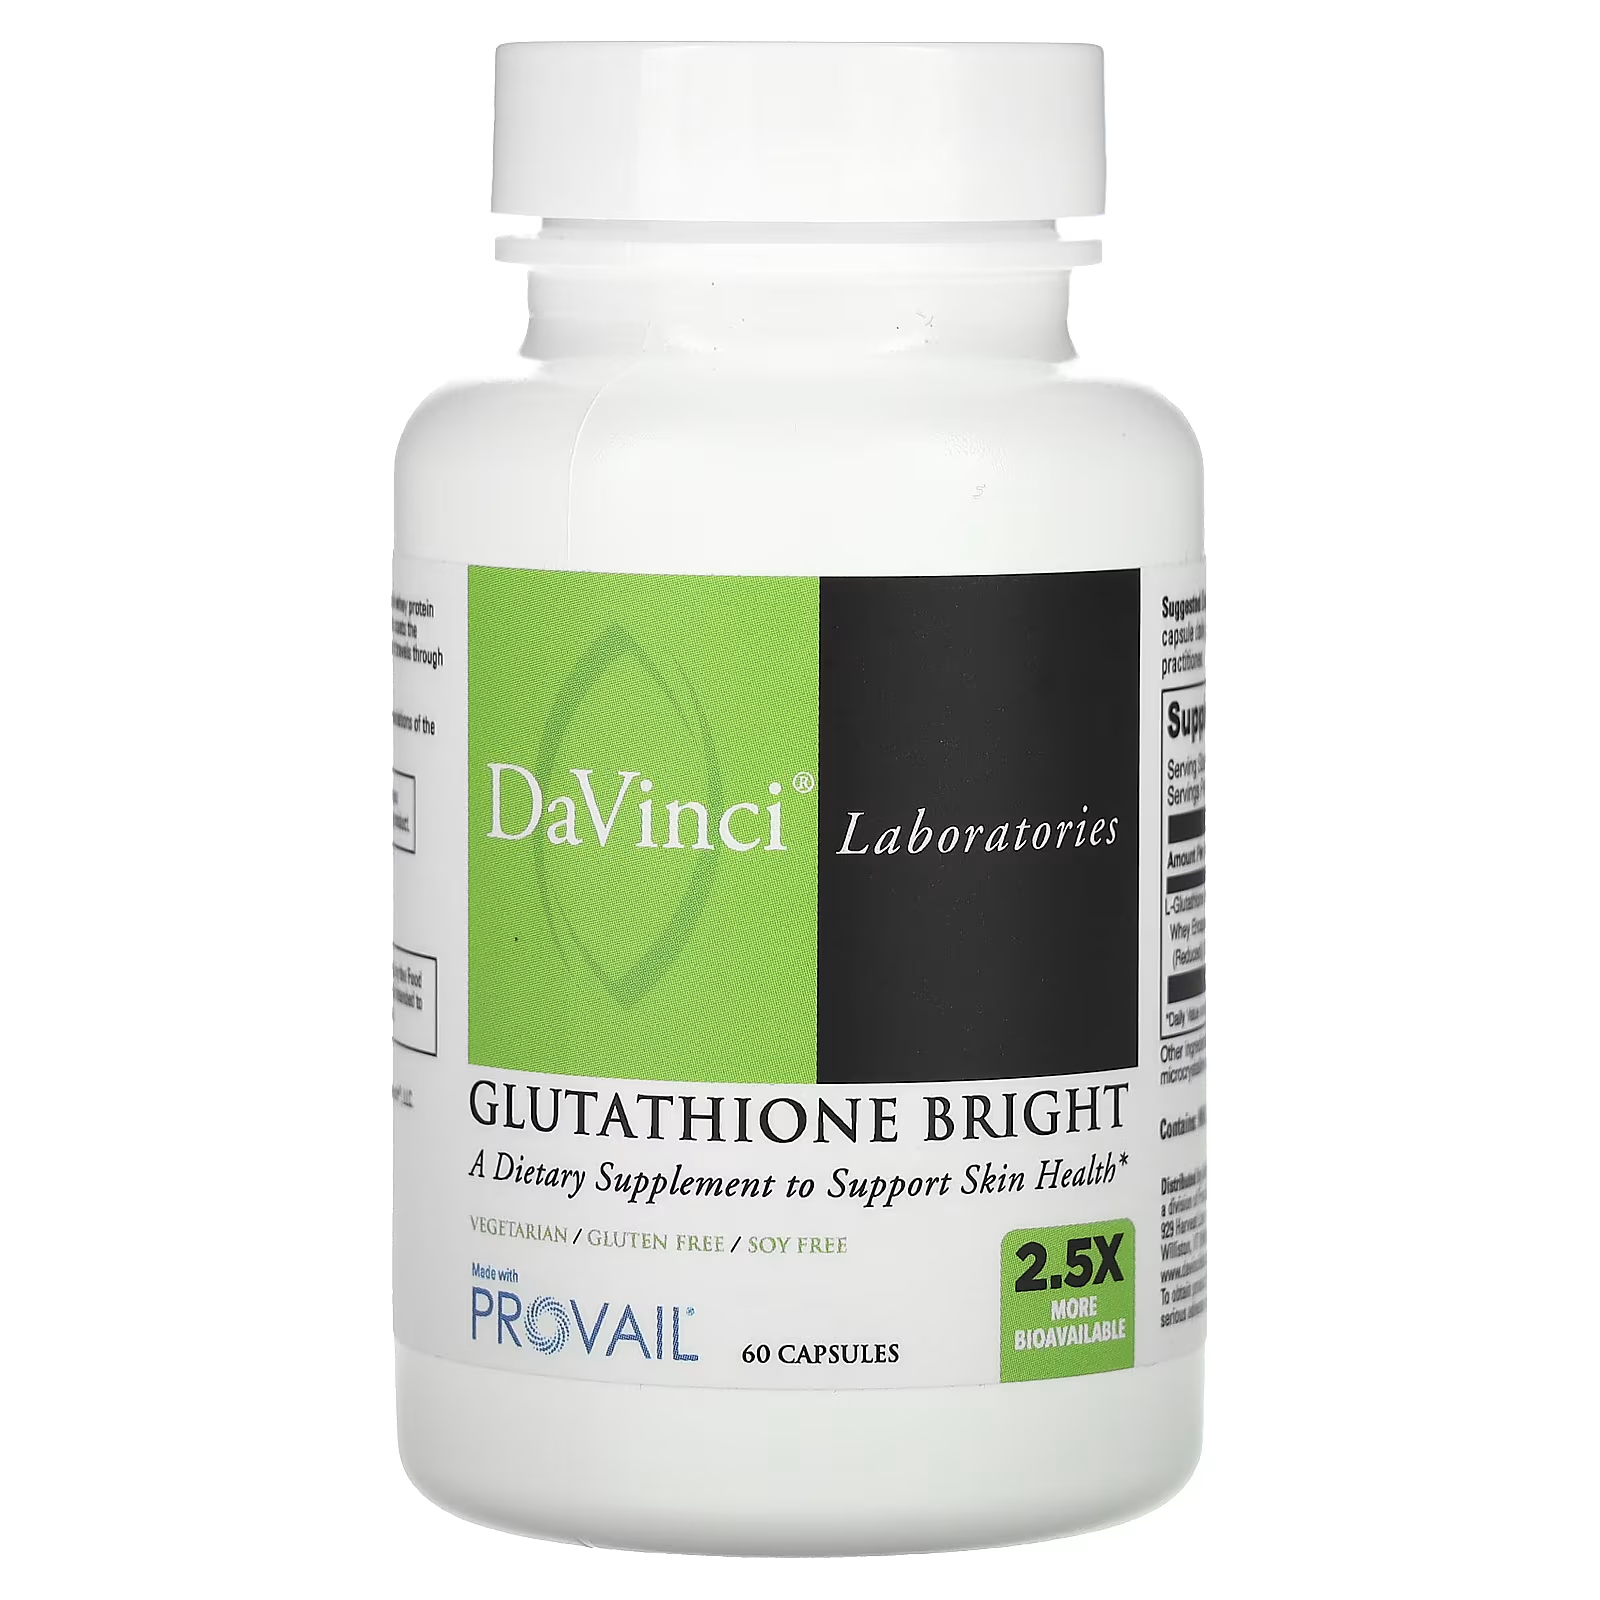 DaVinci Laboratories of Vermont Glutathione Bright 60 капсул davinci laboratories of vermont benefits line estro benefits 60 капсул